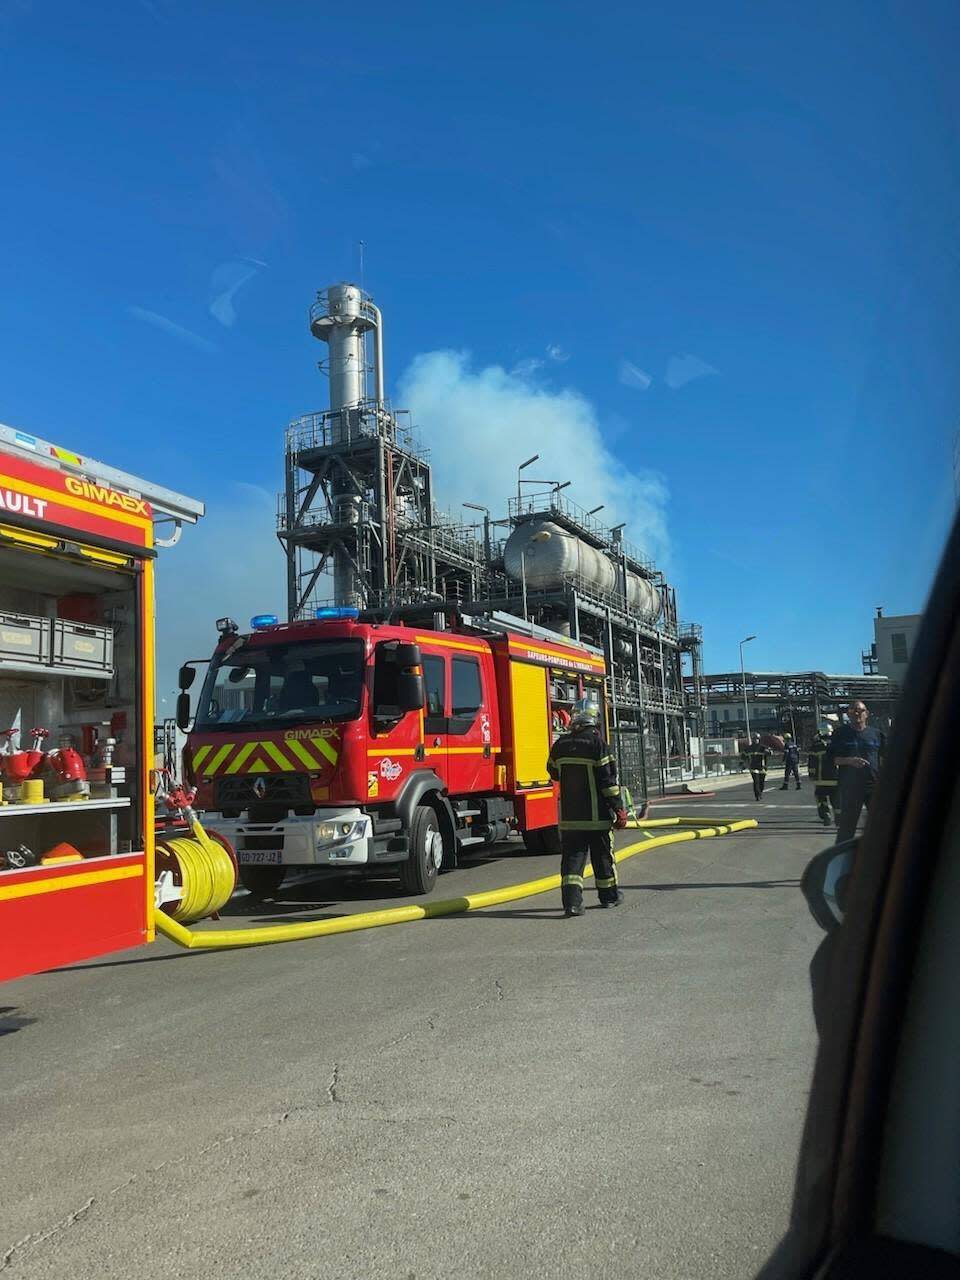 Un incendie s’est déclaré dans la zone industrielle de Sète, dans une usine classée Seveso.